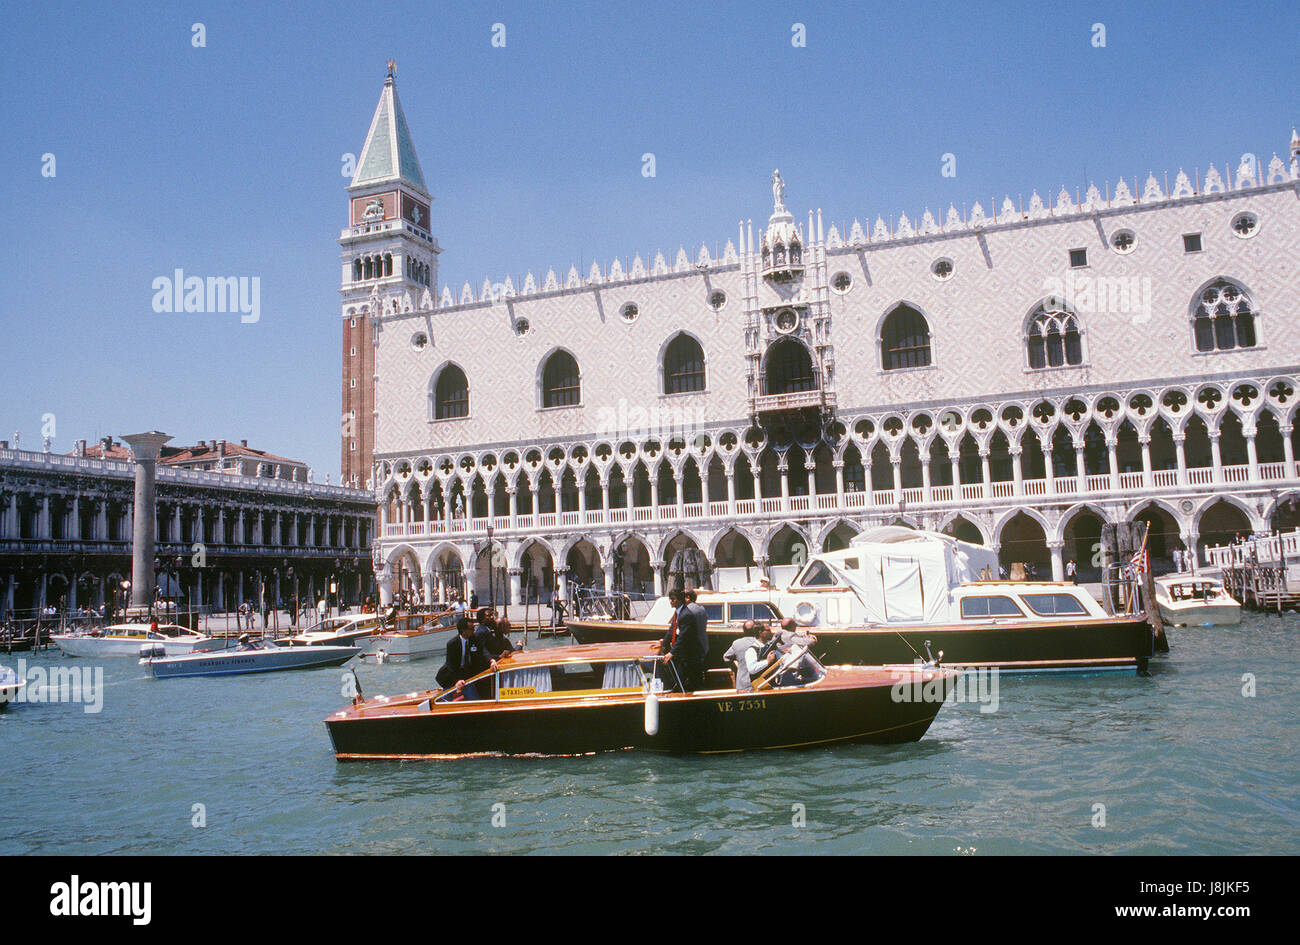 Sicurezza italiana al personale di utilizzare un taxi acqueo a guardia il Presidente Ronald Reagan barge durante la sua visita a Venezia per una sette-nazione vertice economico. Foto Stock